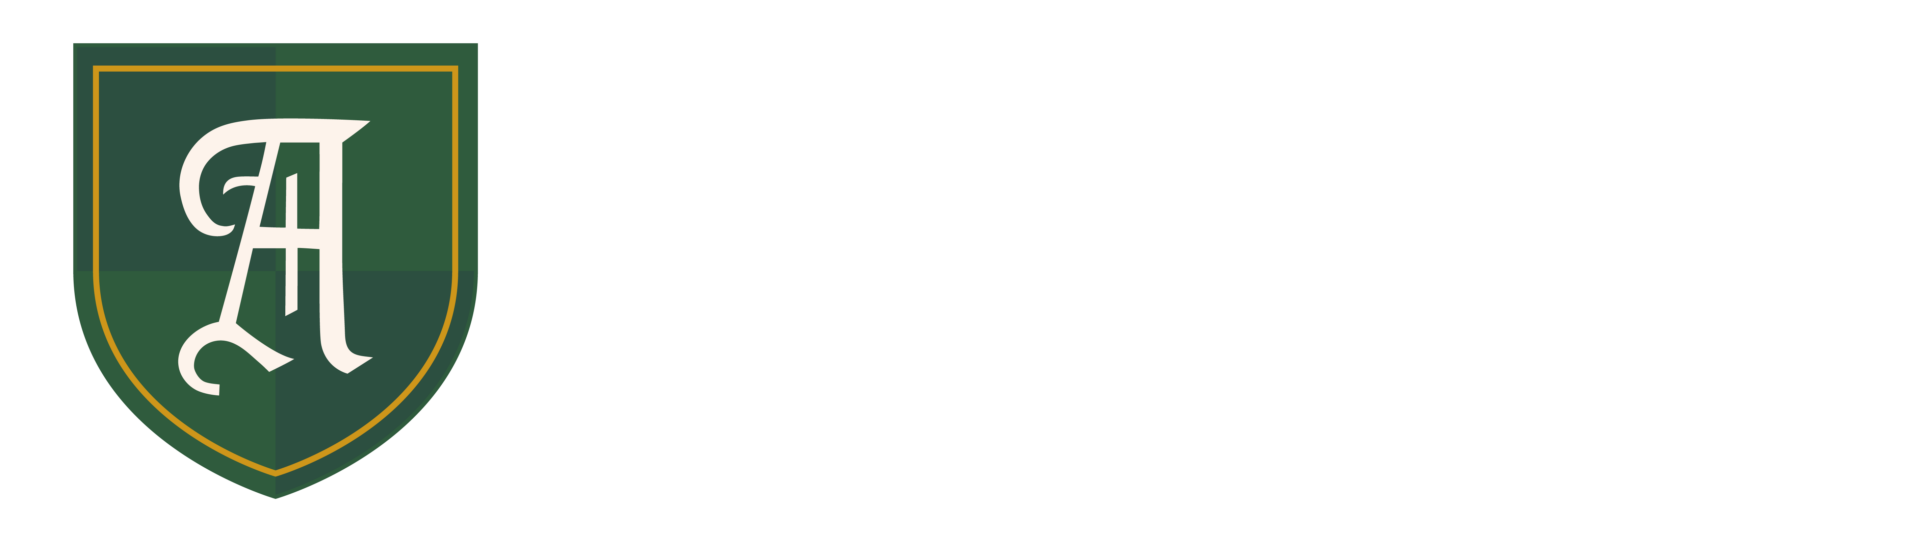 New Aberdeen College Logo - Light